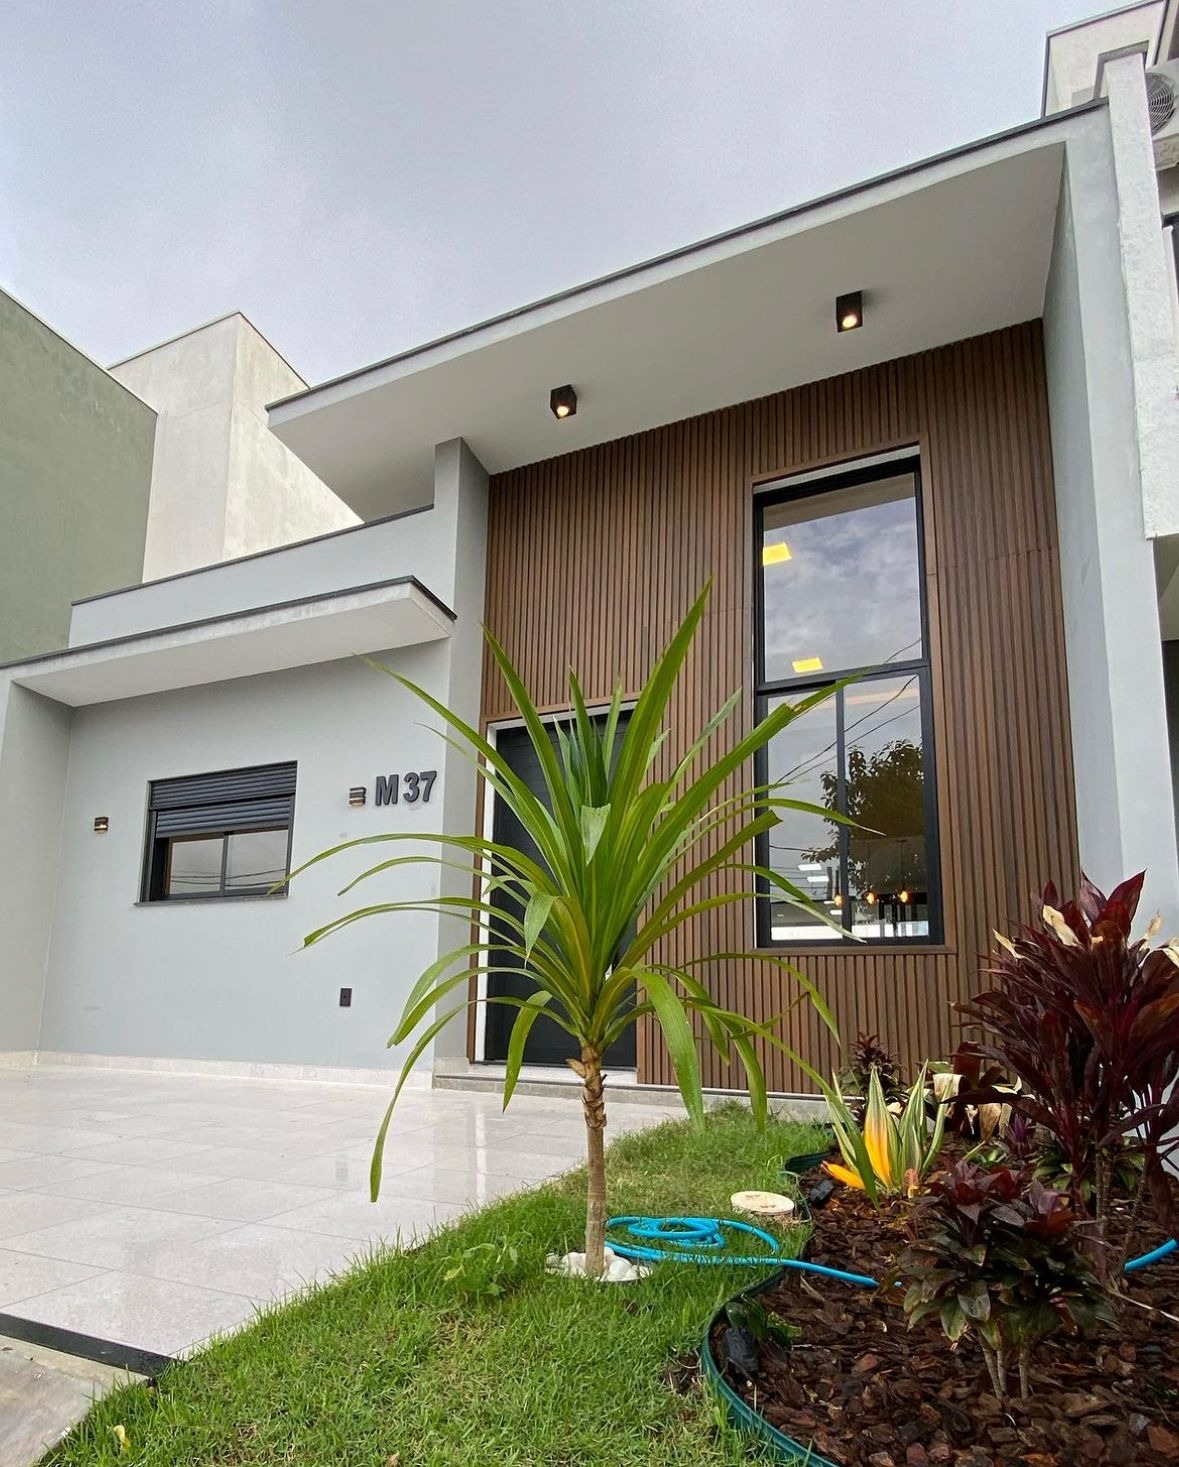 Imóvel residencial térreo com 100m2 área construída num terreno de 150m2 no condomínio Golden Park 2 - Sorocaba